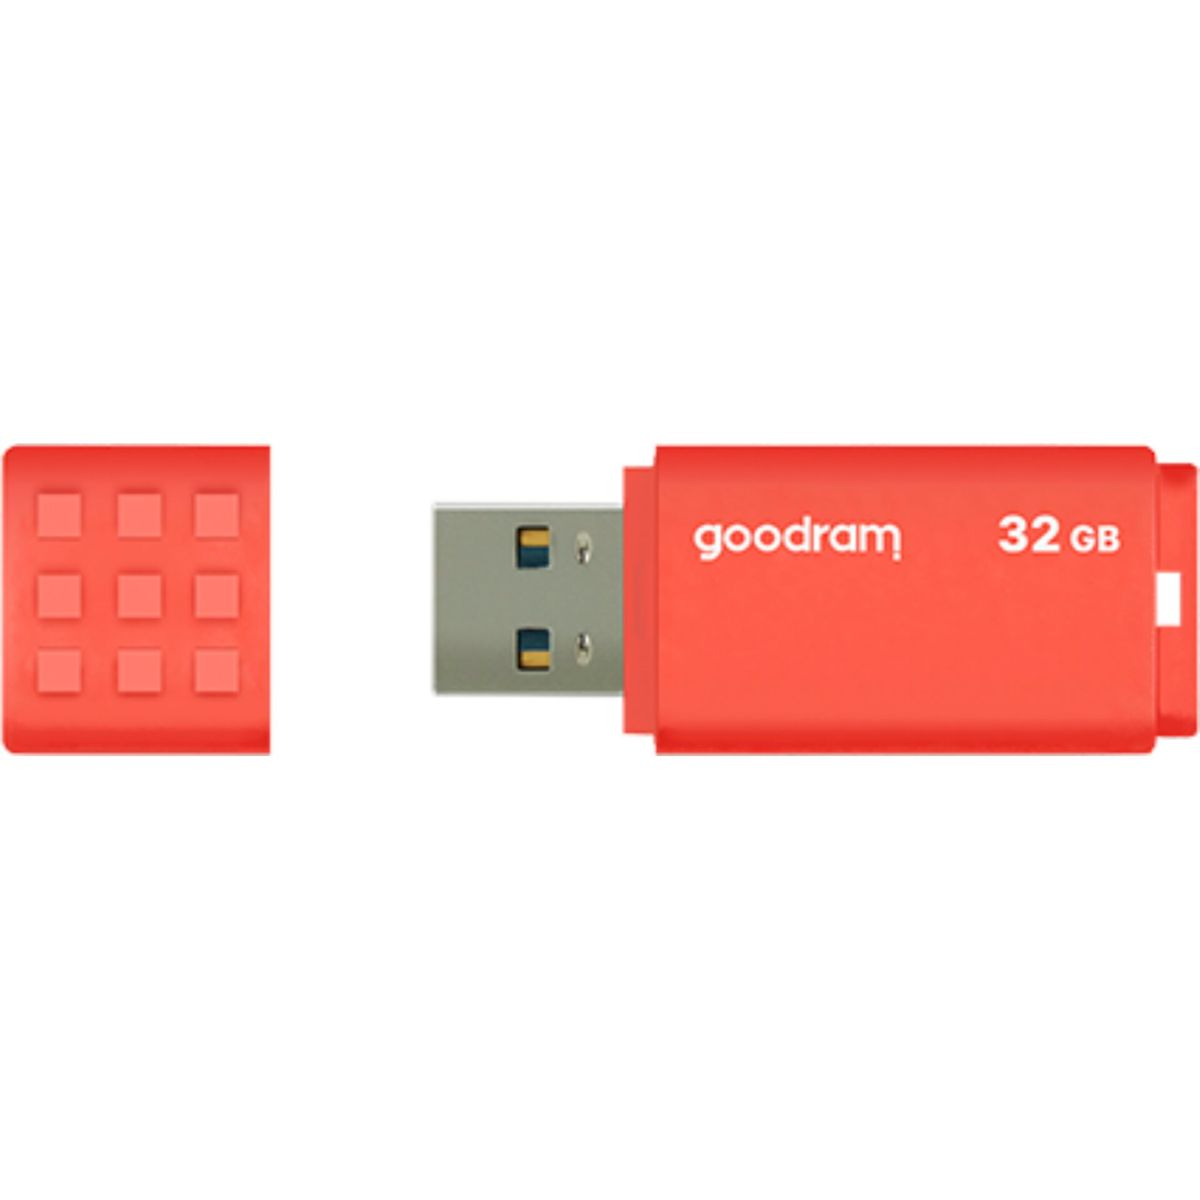 USB GOODRAM Stick (orange, 3.0 32 USB 32GB Orange GB) UME3